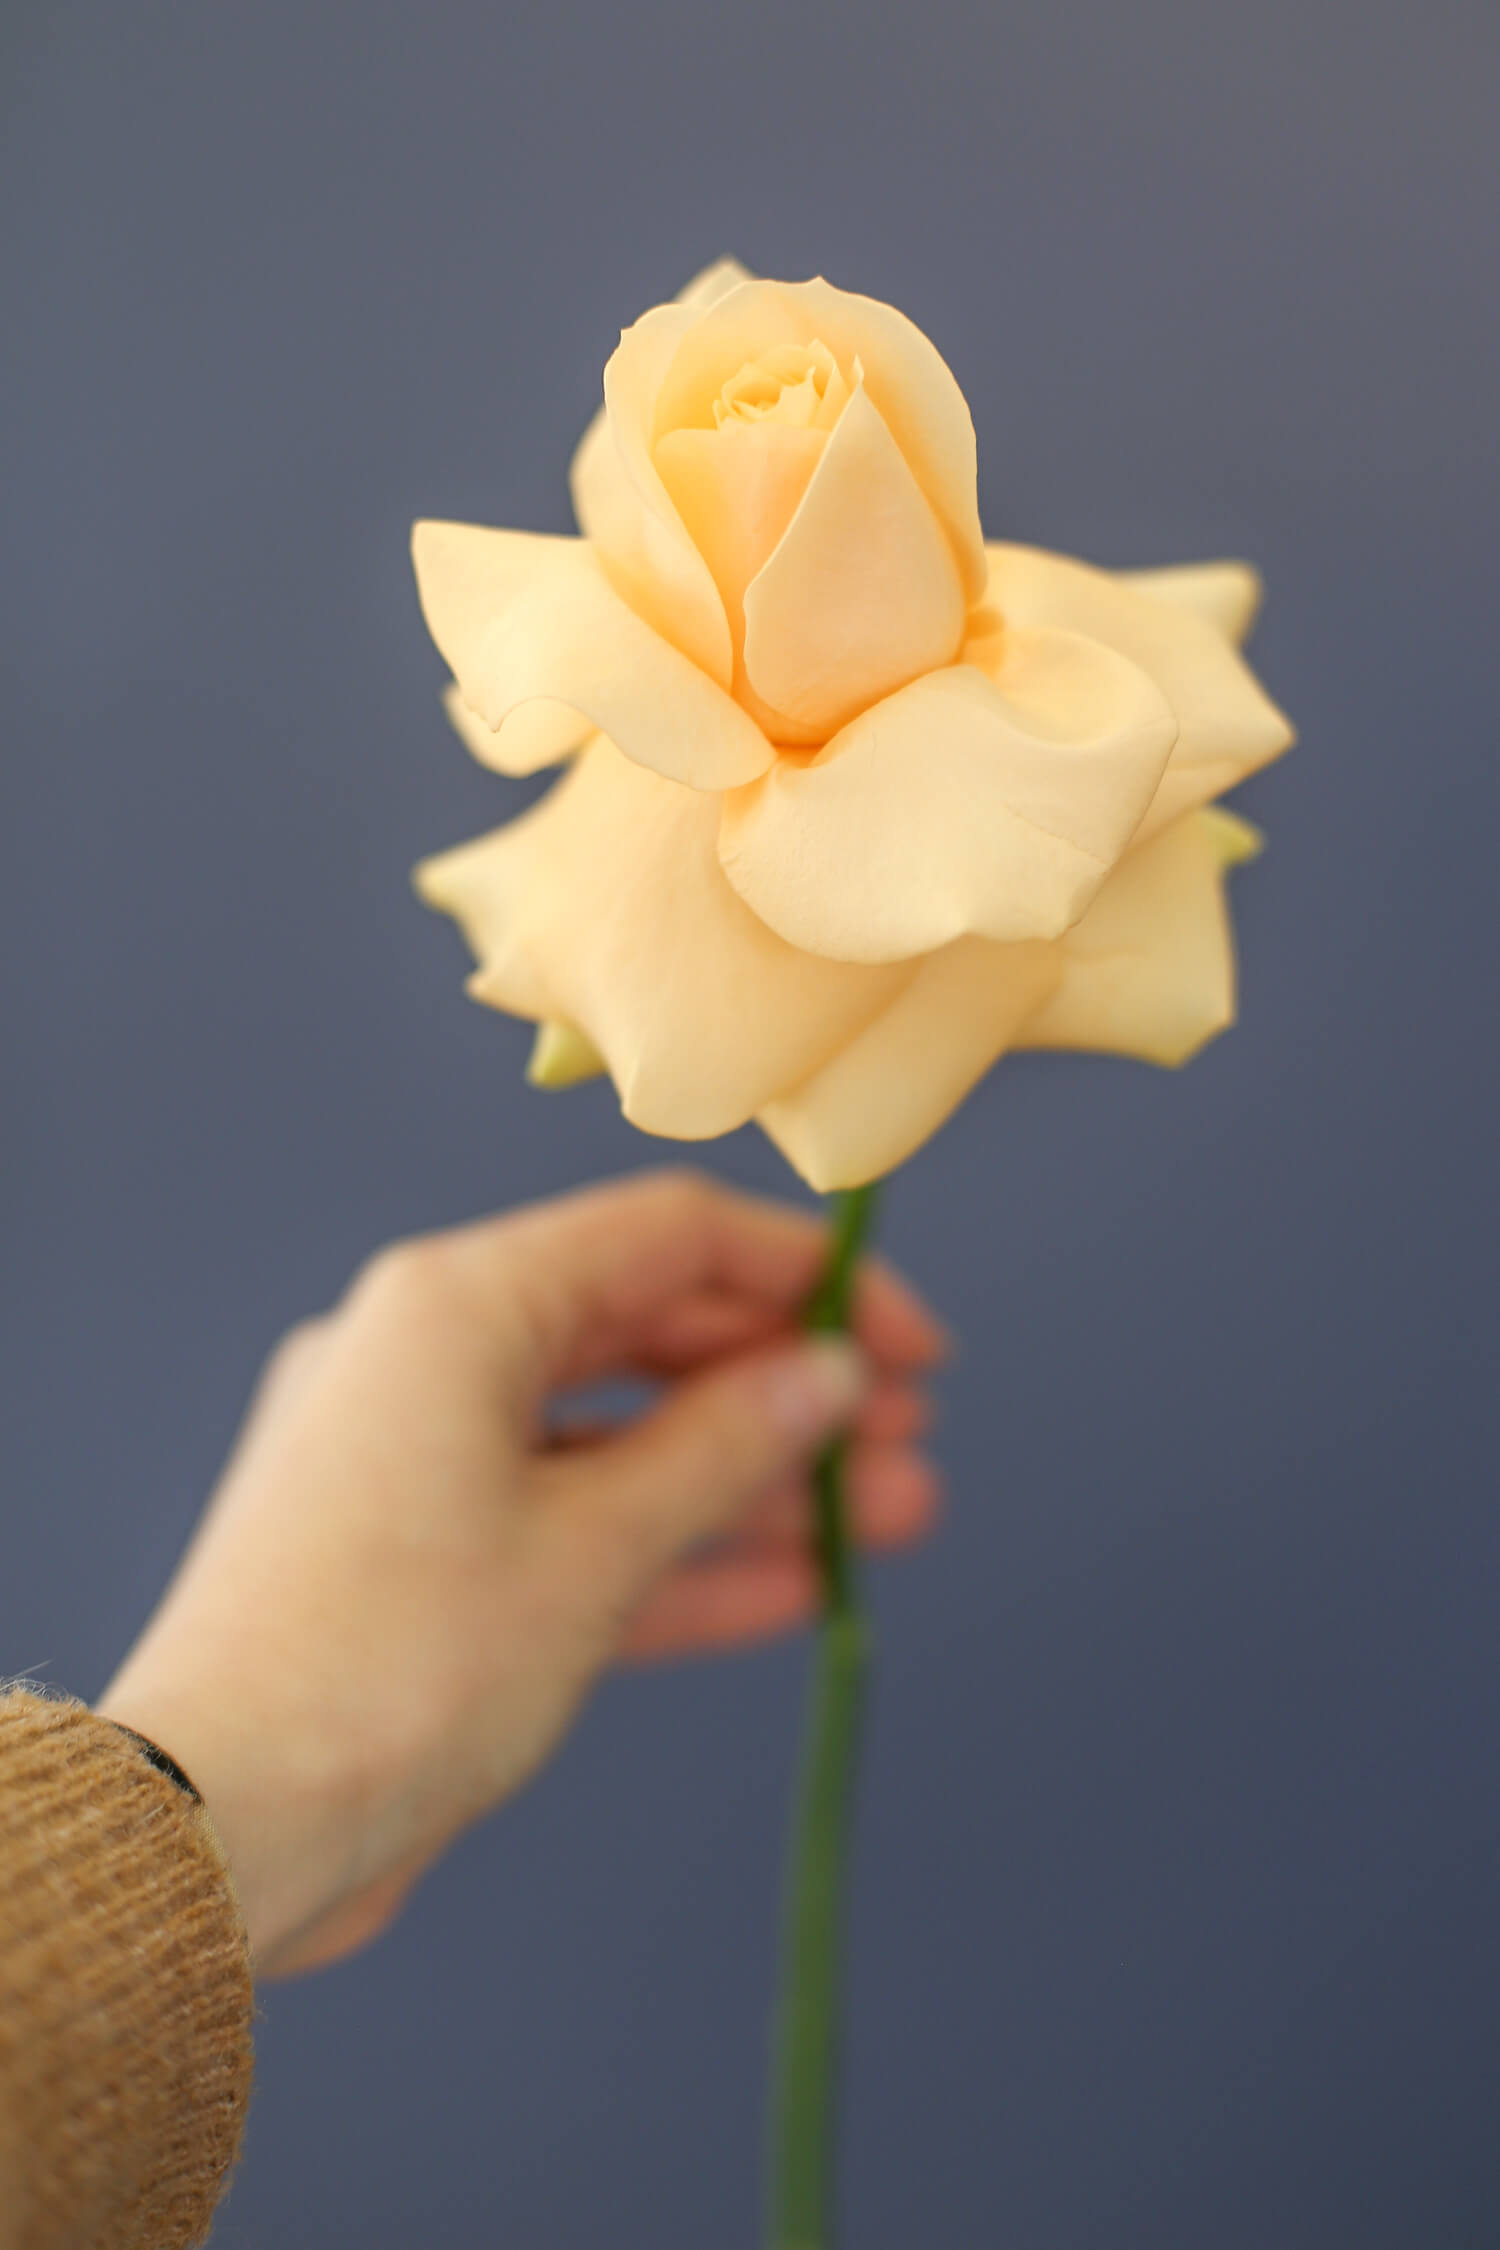 Kiva tapa käyttää ruusua on kääntää terälehset hellävaraisesti auki. Kukka saa tyystin toisen ilmeen.